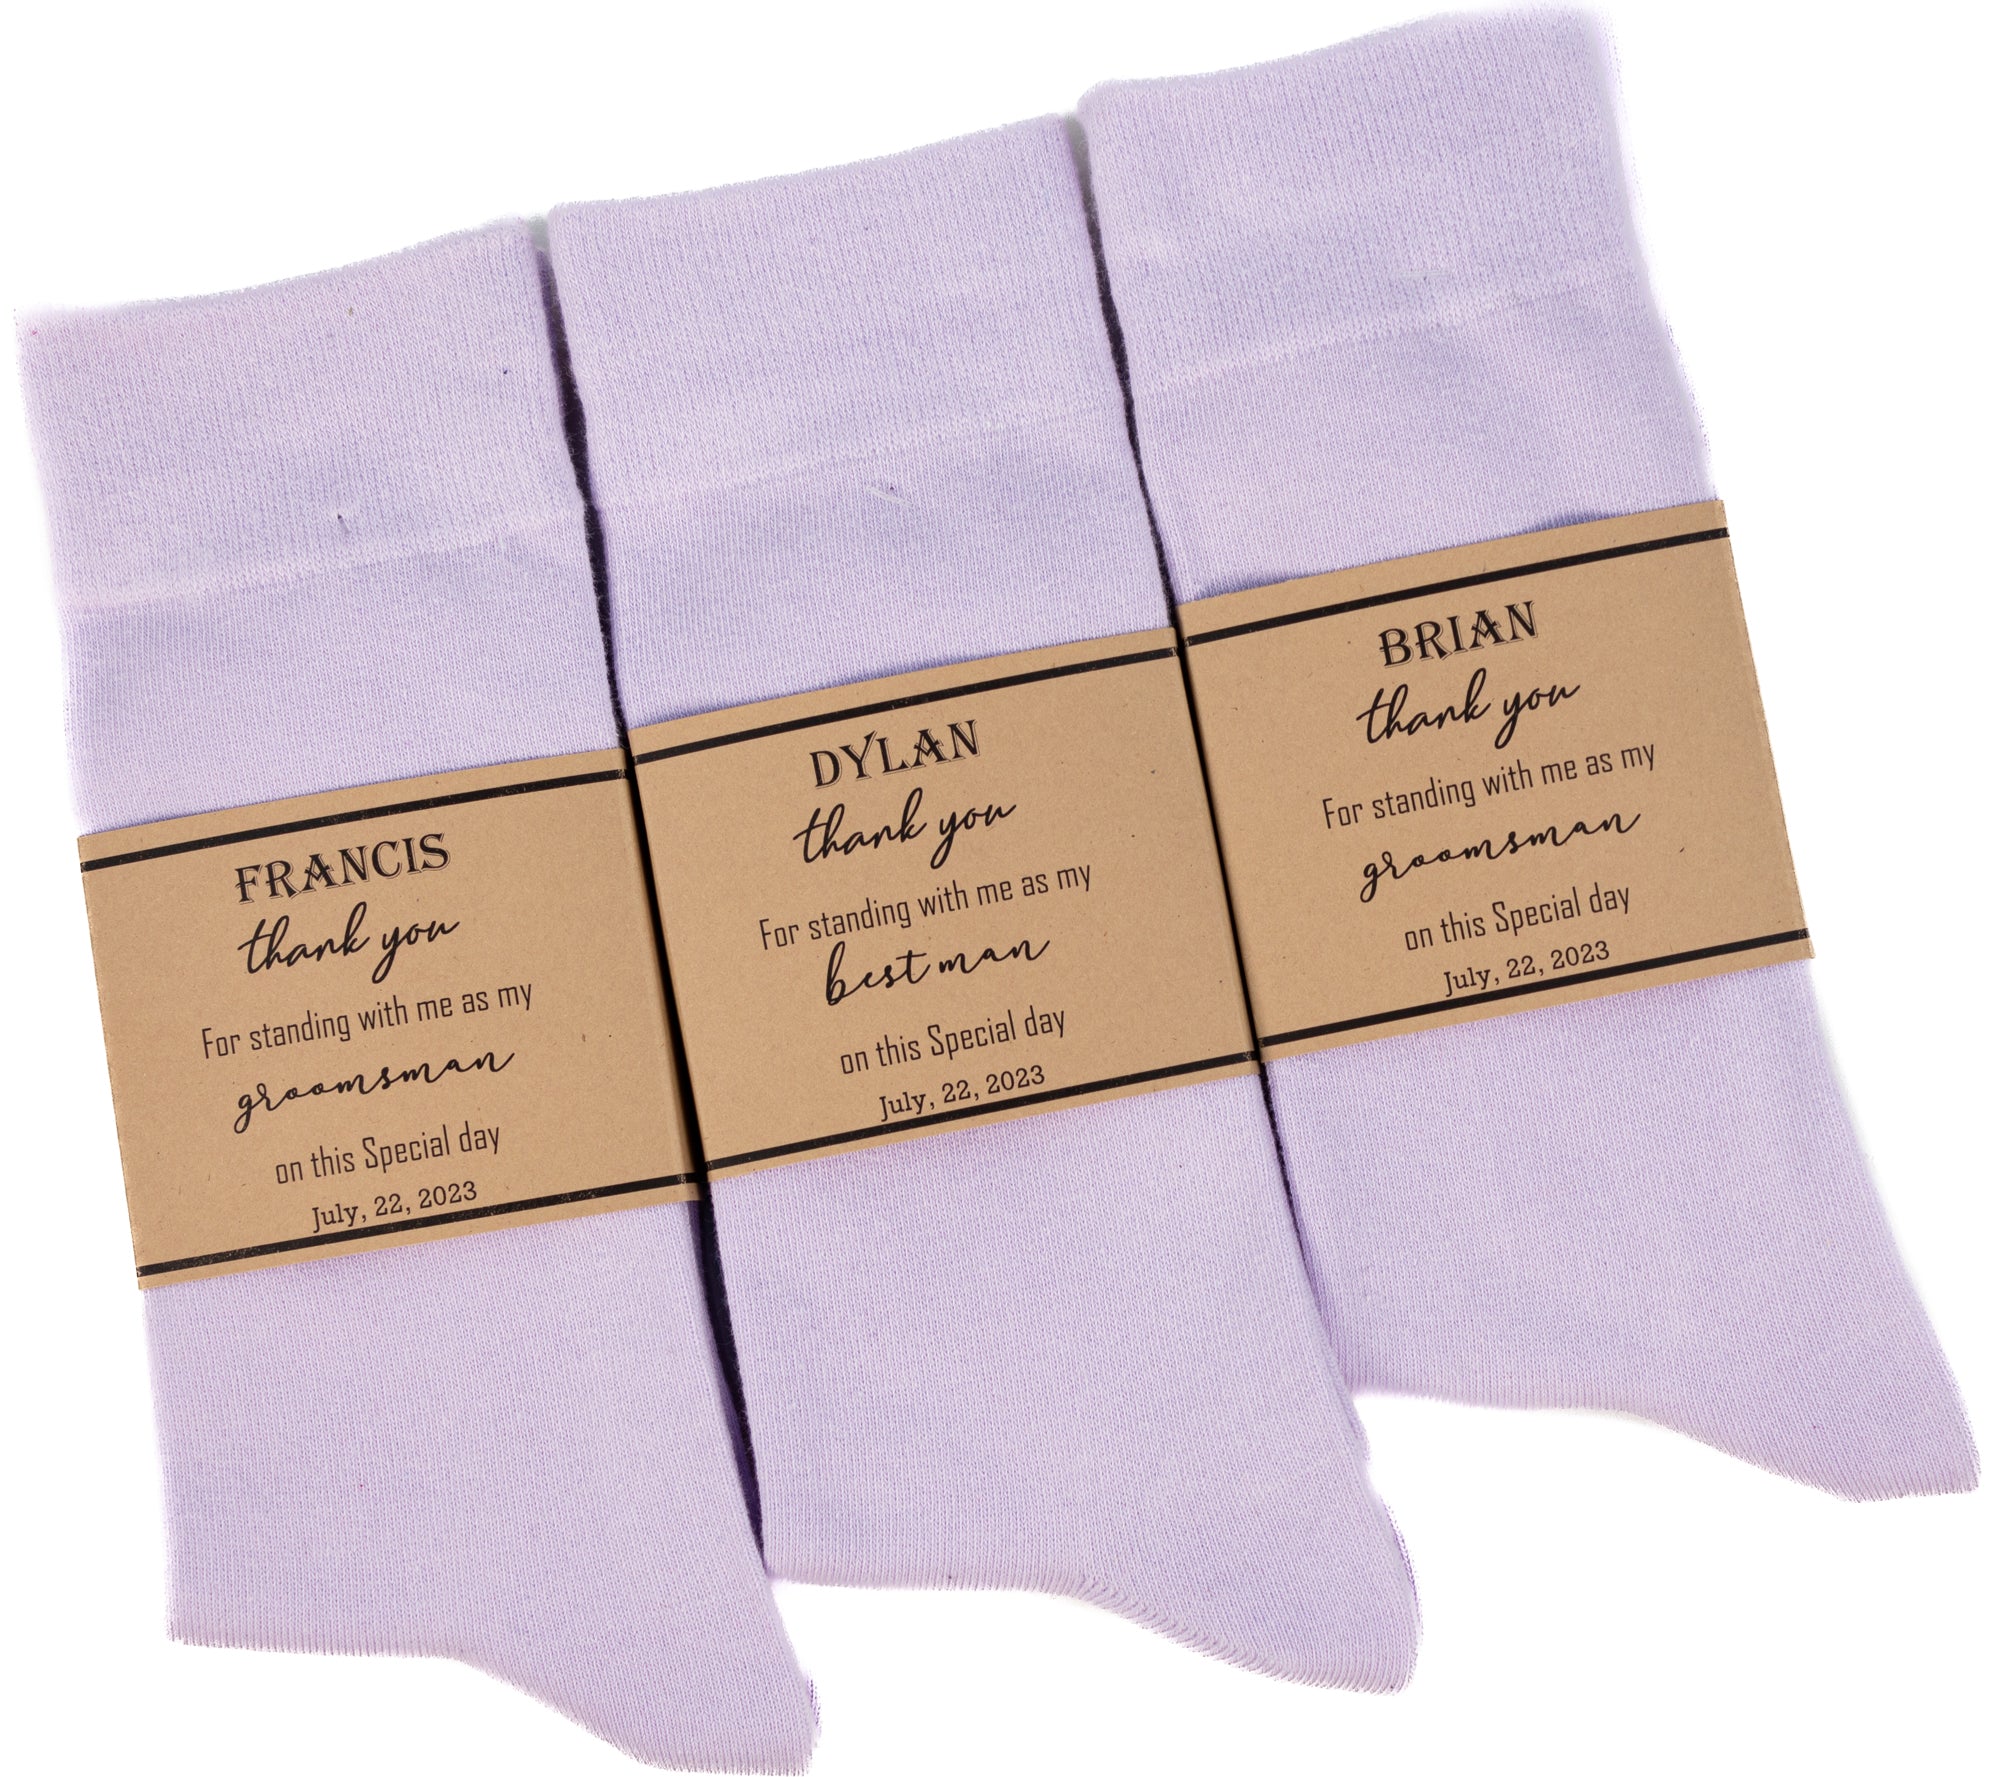 Lavender solid socks